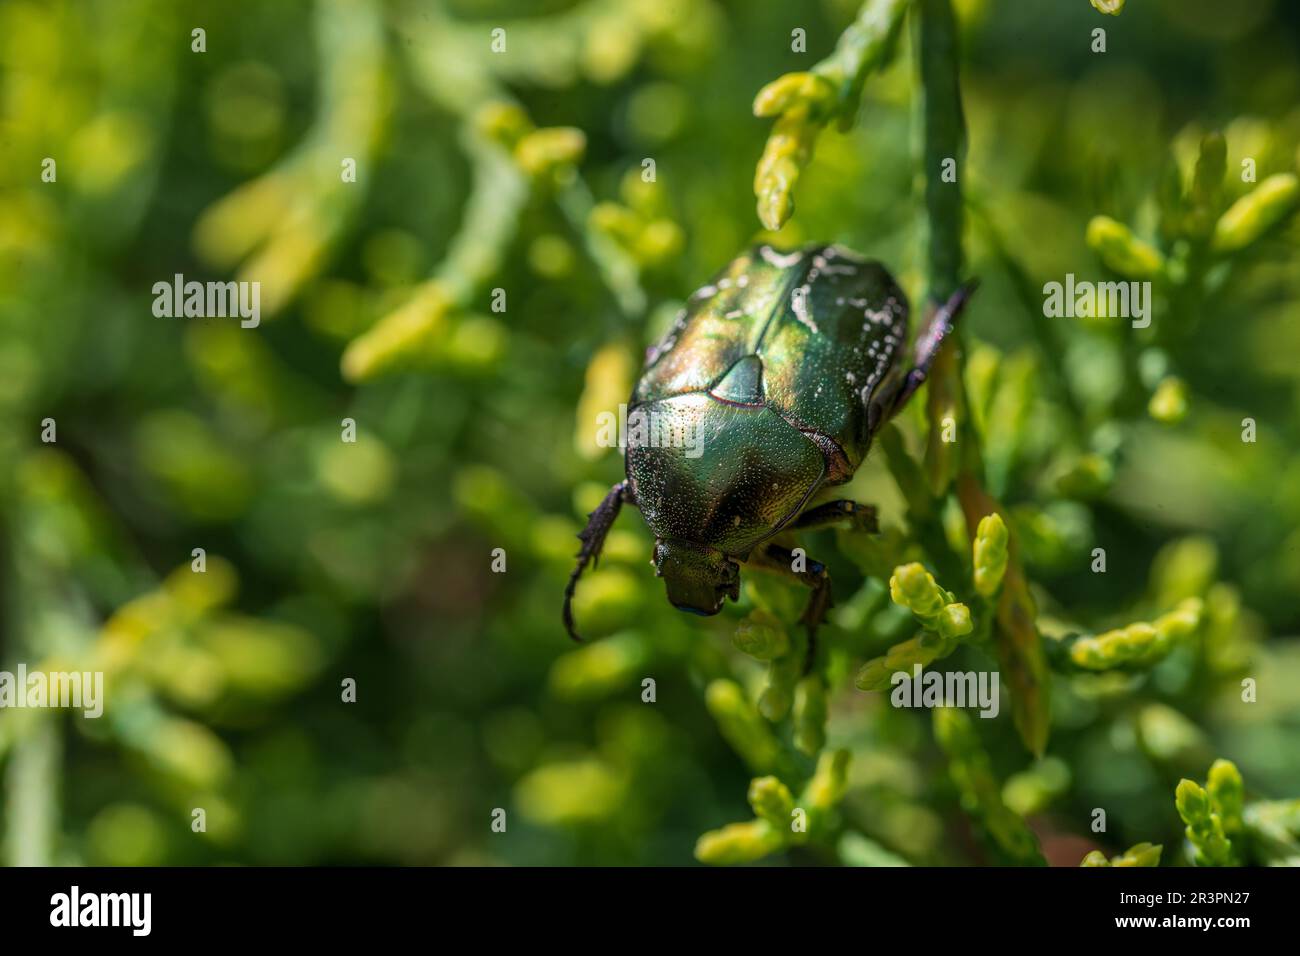 Makroaufnahme eines wunderschönen, metallischen, glänzenden Grün- und Kupferkäfers (Protaetia cuprea) auf grünem Blatt, umgeben von Vegetation im Frühling. Protaetia cupr Stockfoto